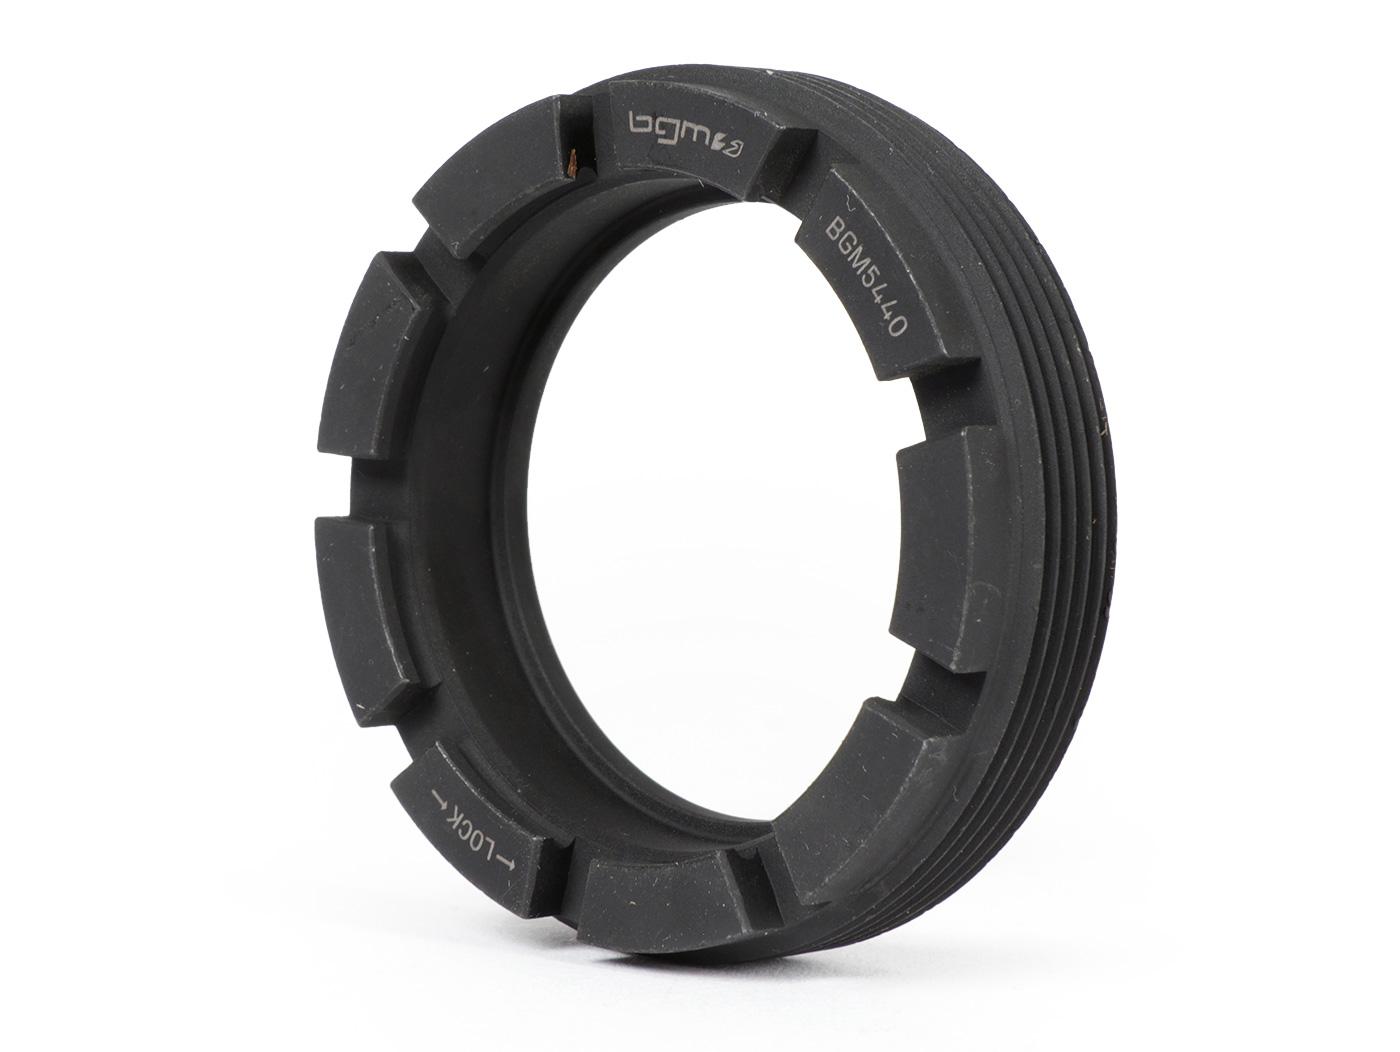 Rear wheel bearing locking ring nut - BGM Original -VESPA Øint. = 40mm, Øest. = 54mm, notches = 9- Vespa GS160 (VSB1T, VSB2T), SS180 (VSC1T)